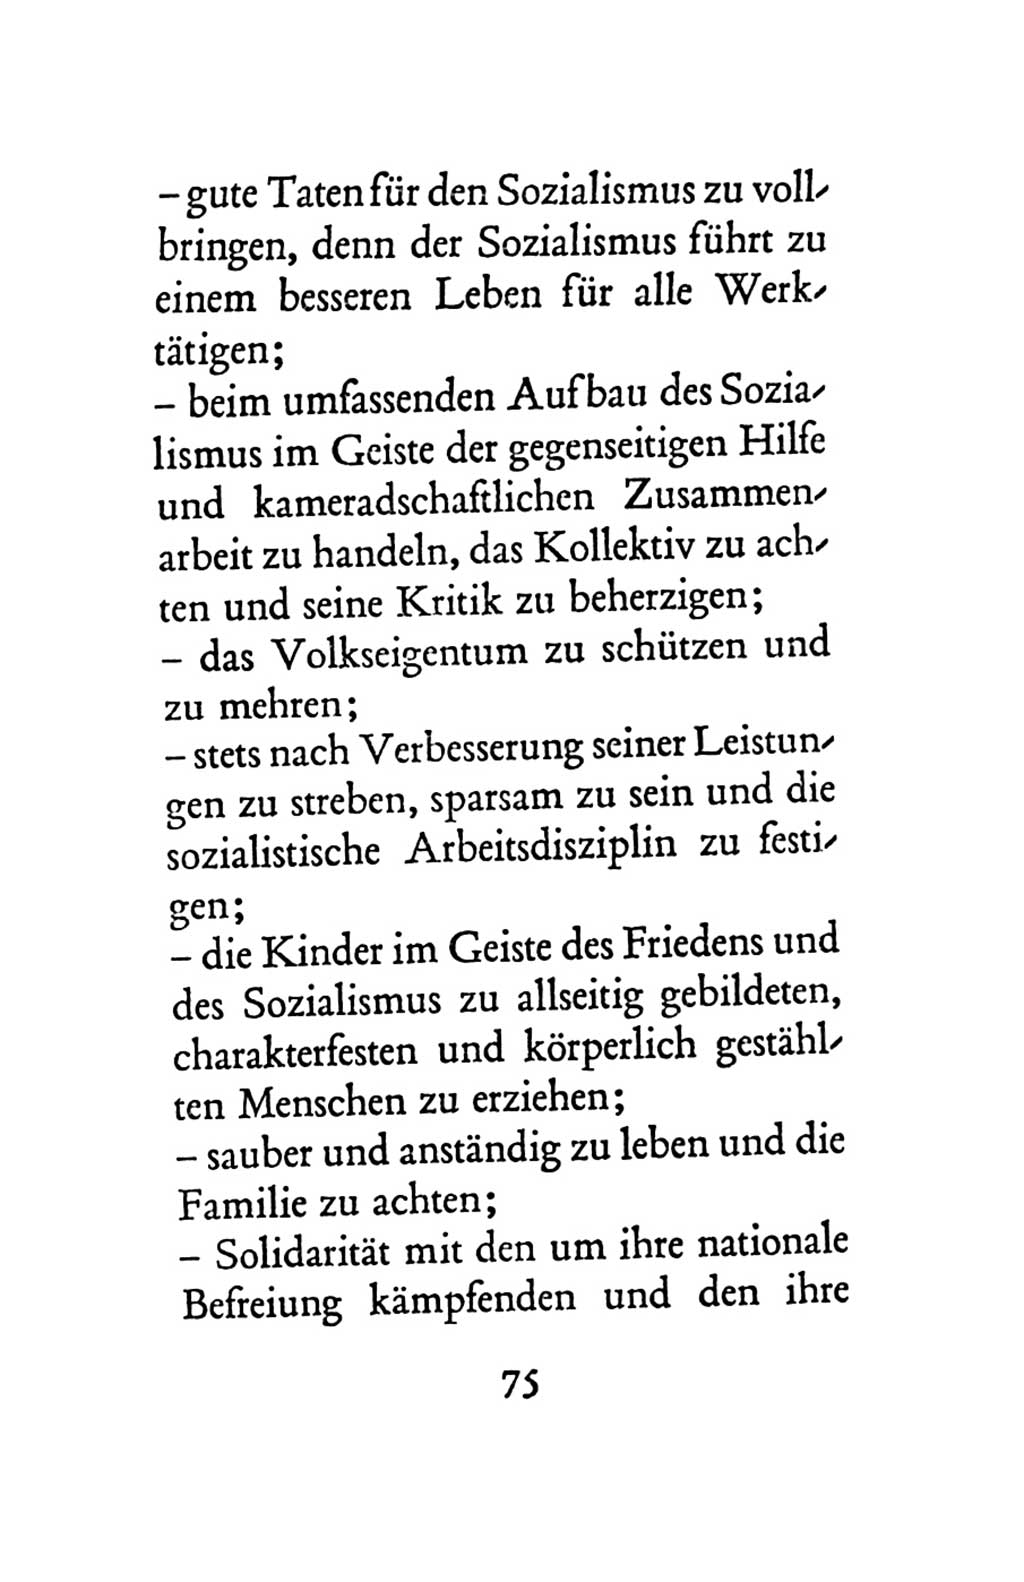 Statut der Sozialistischen Einheitspartei Deutschlands (SED) 1963, Seite 75 (St. SED DDR 1963, S. 75)